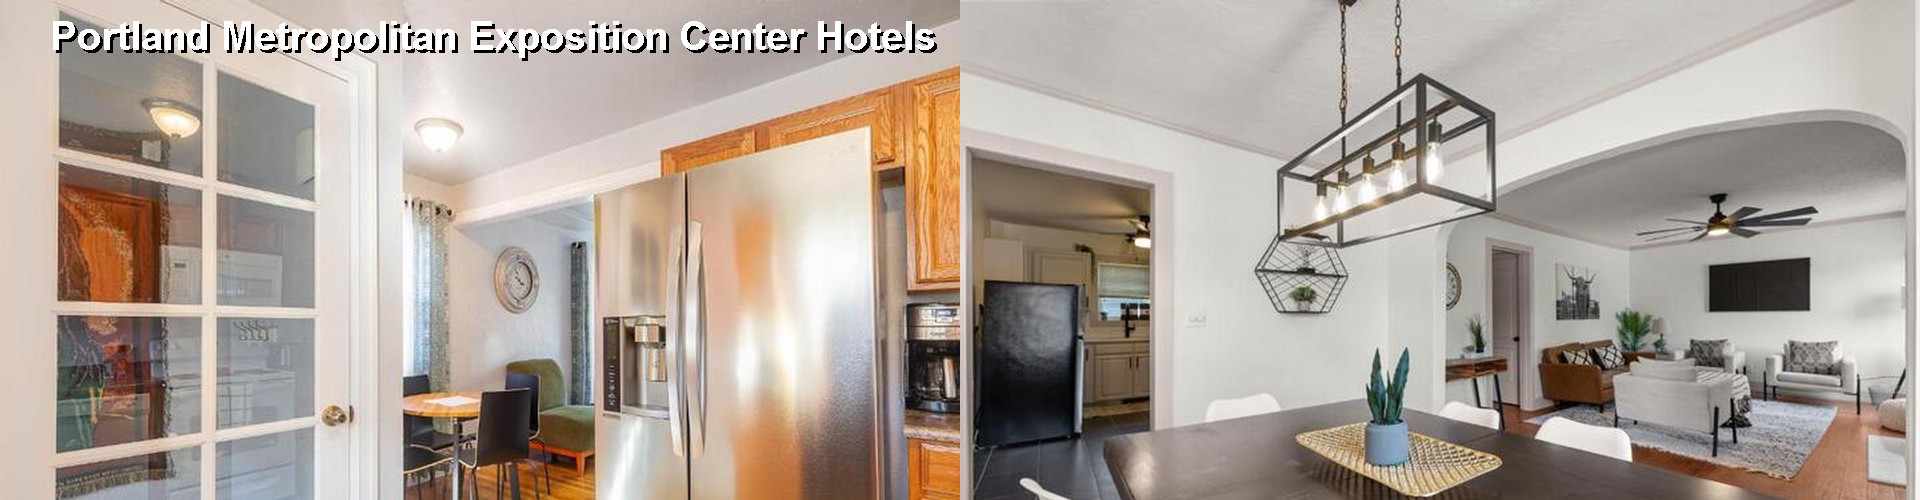 4 Best Hotels near Portland Metropolitan Exposition Center